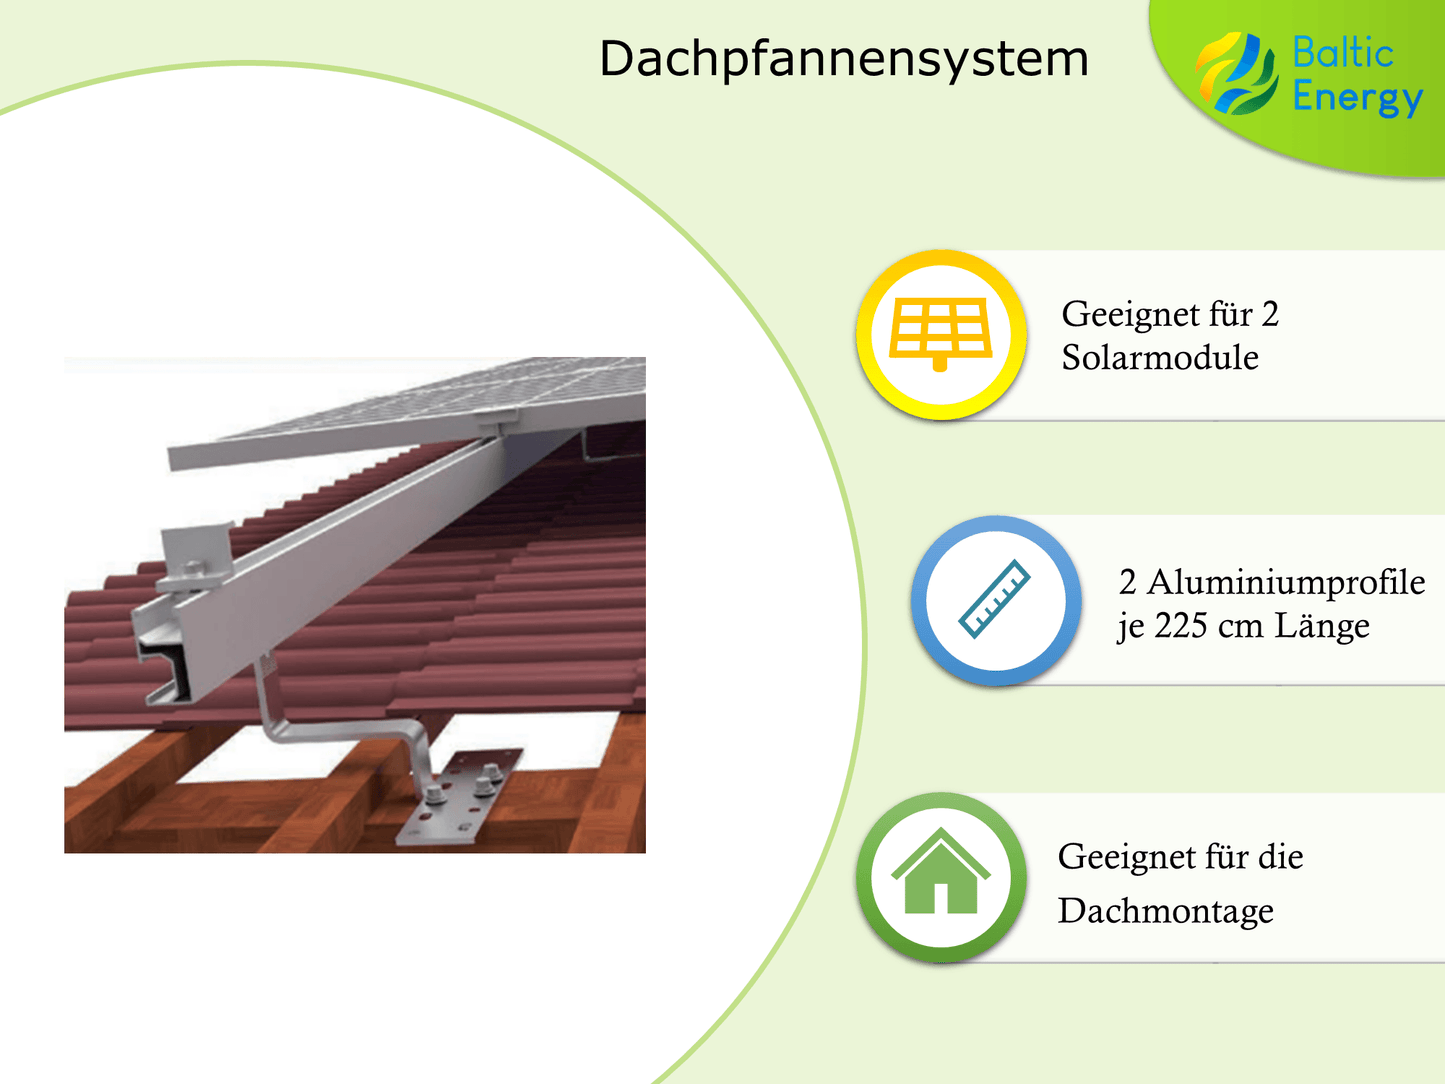 Dachpfannensystem 125 - Baltic Energy